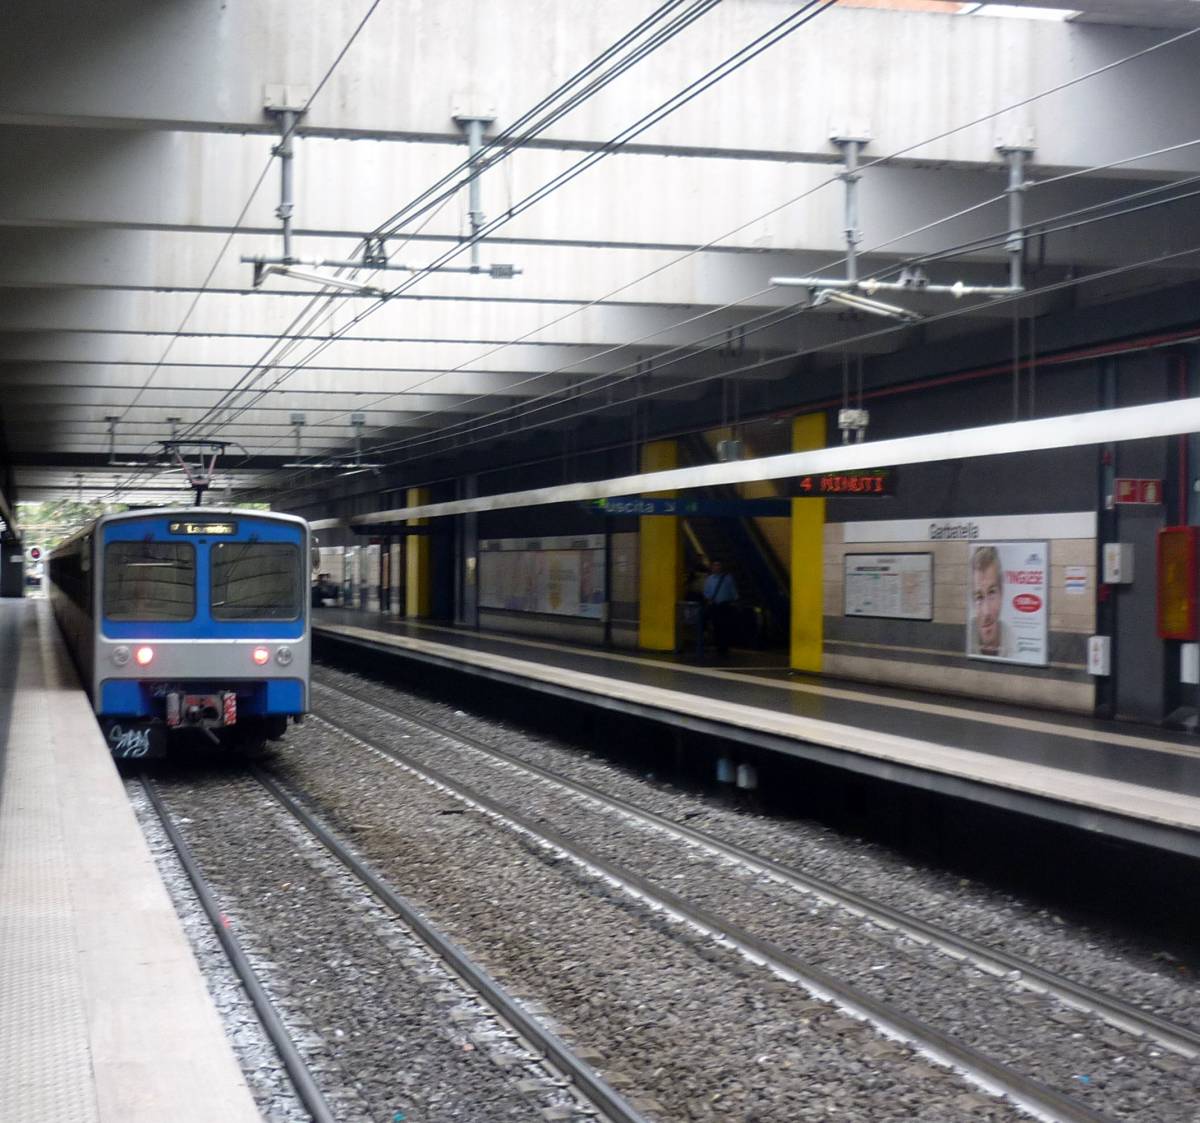 Follia nella metropolitana a Roma: il vagone viaggia con le porte aperte